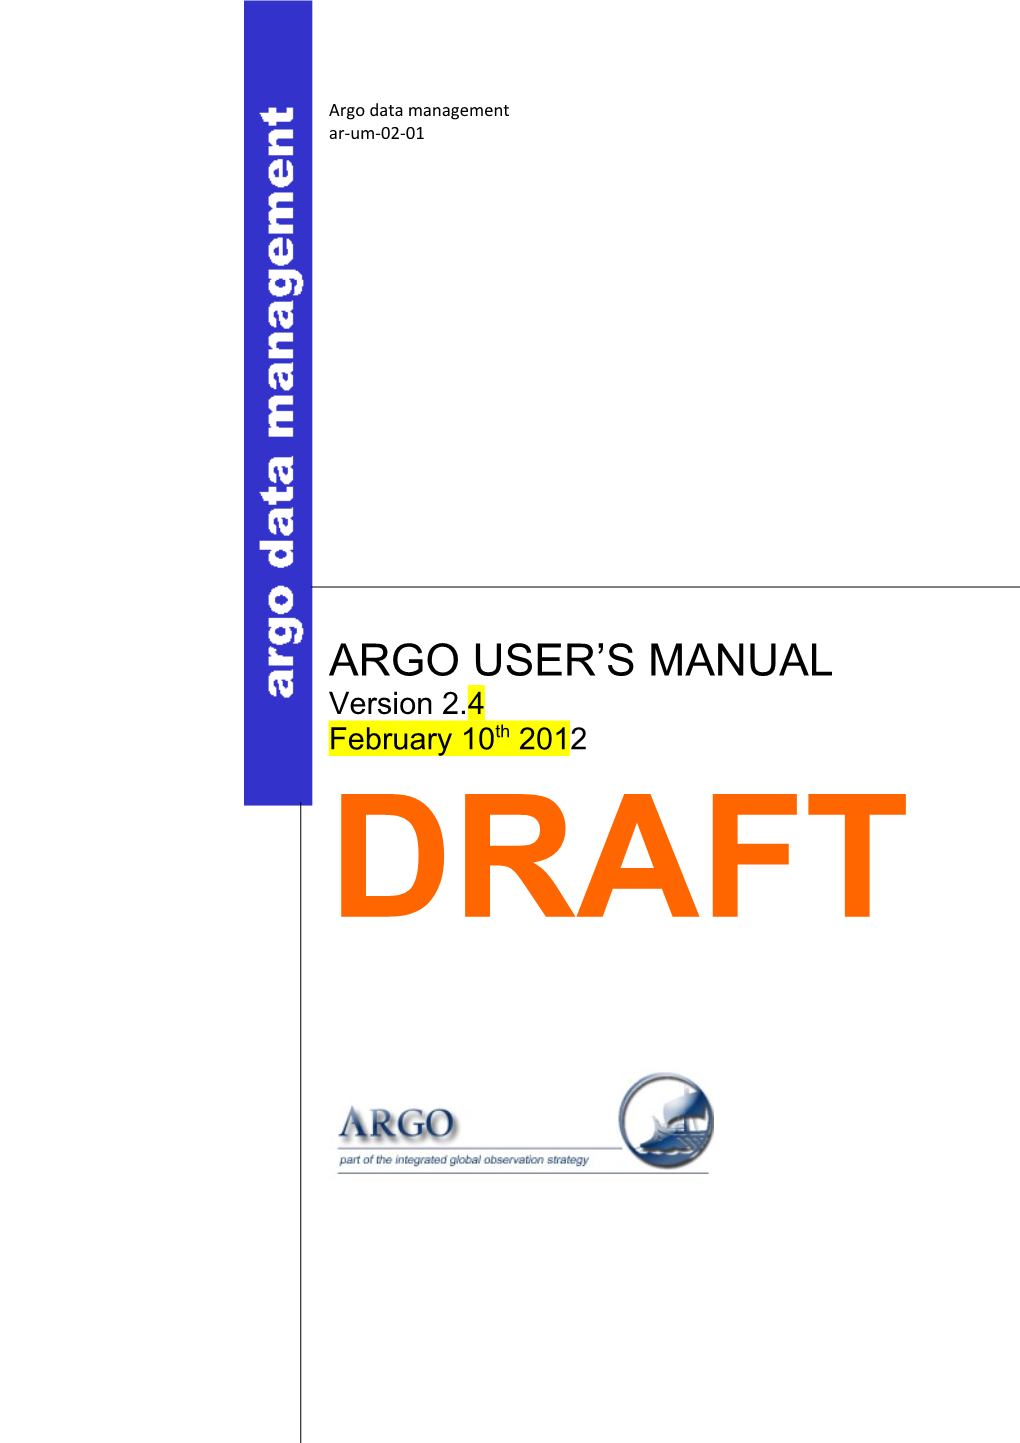 Argo Data Management s1